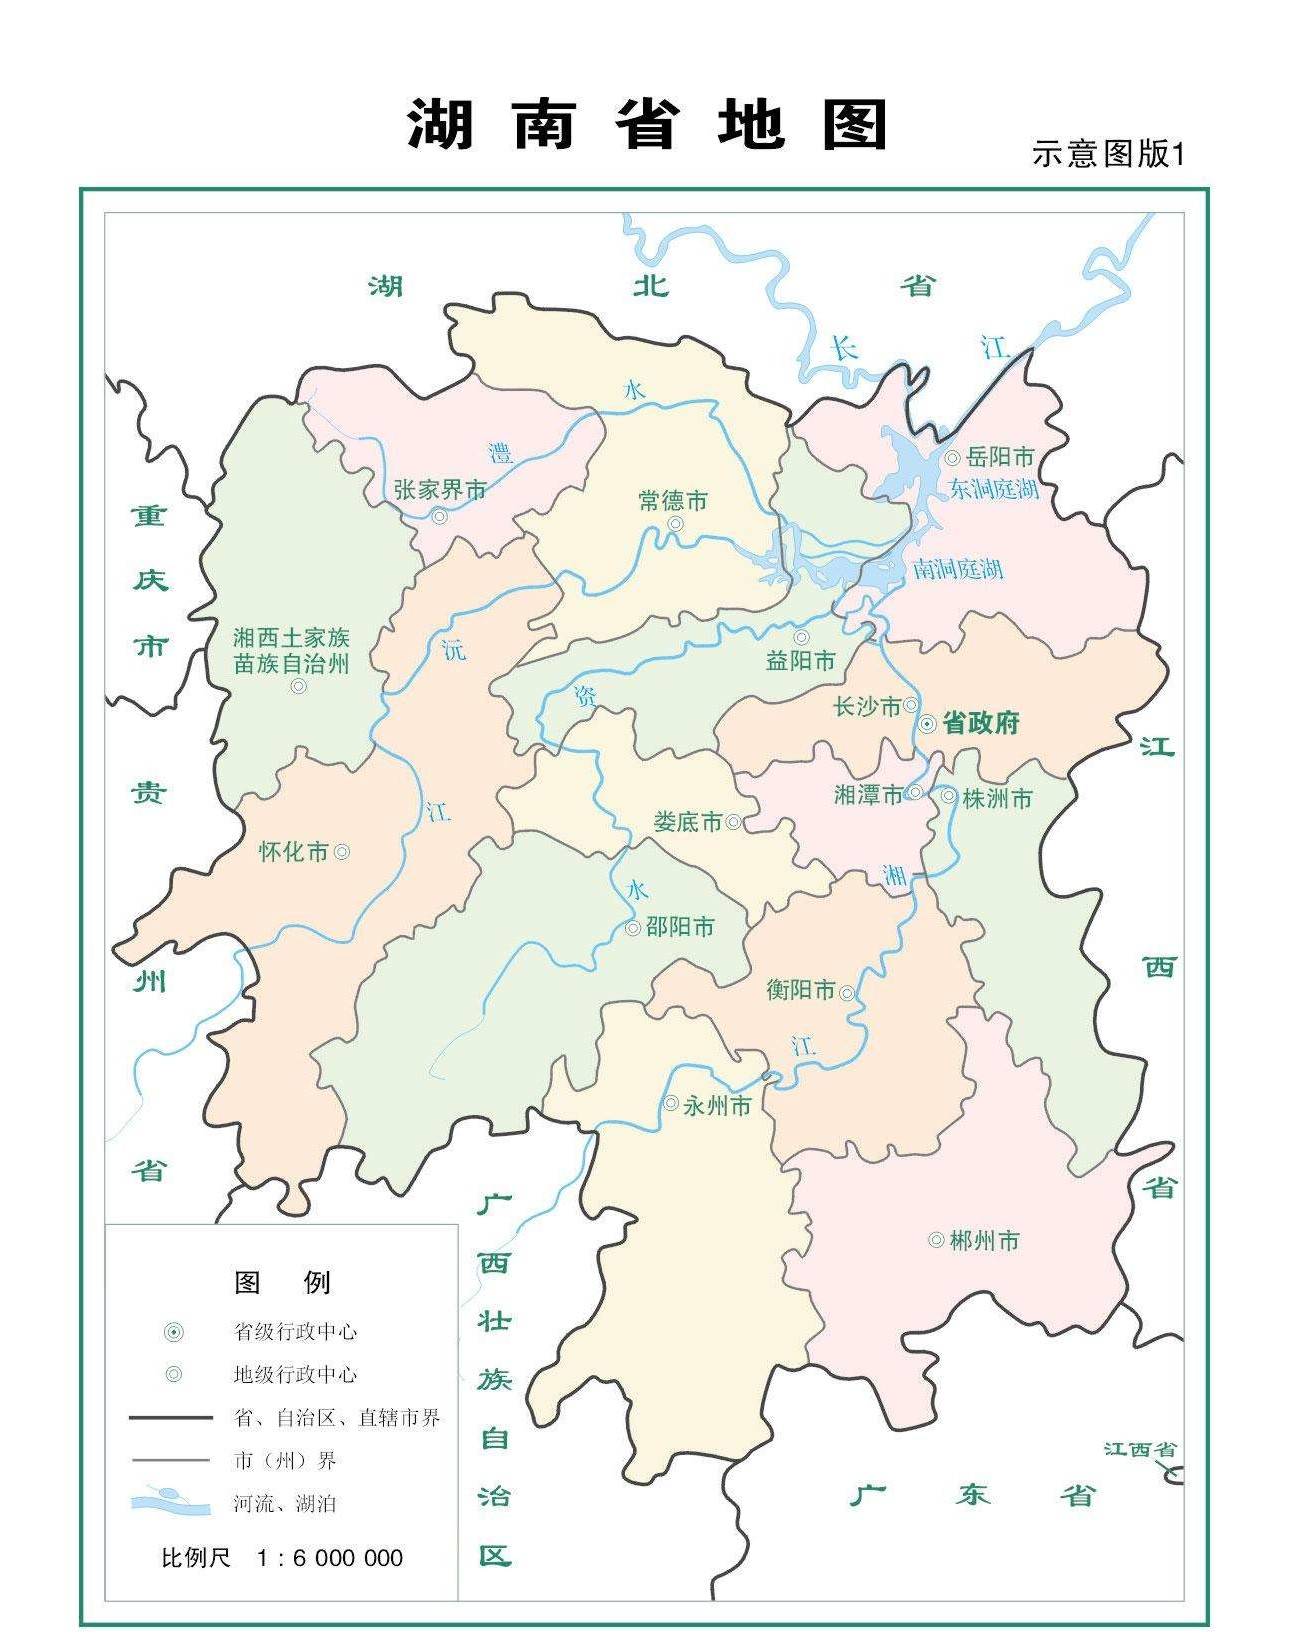 3,湖南省:中国第二大淡水湖洞庭湖分布其中;长江的主要支流湘江水乡